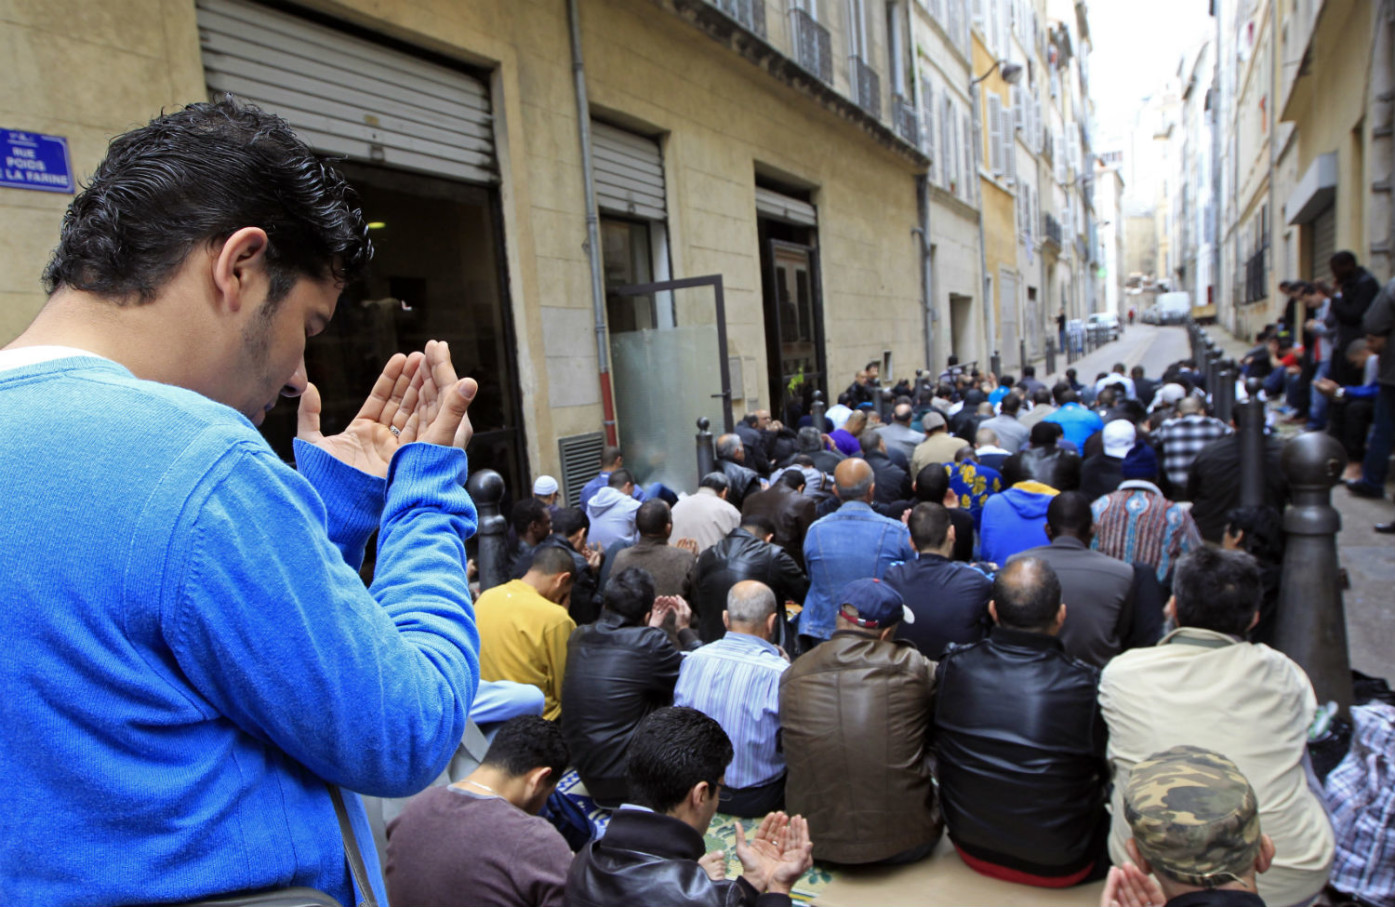 How the Left Failed France’s Muslims